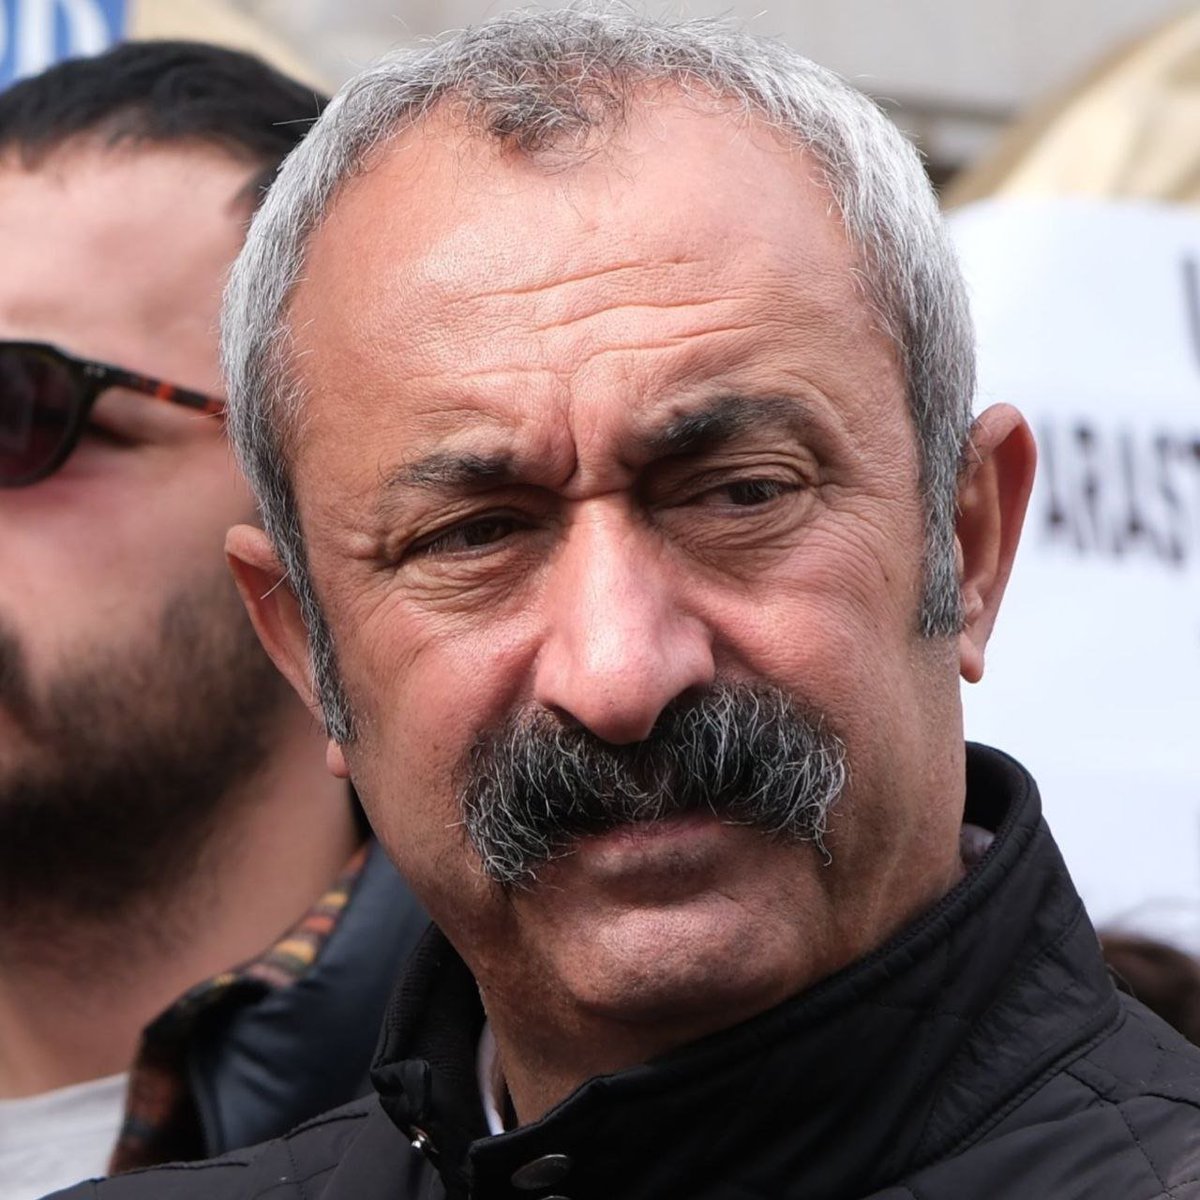 Tunceli Belediyesi'ni 67 milyon TL borçla devralan Fatih Mehmet Maçoğlu, 230 milyon TL borçla devretti.